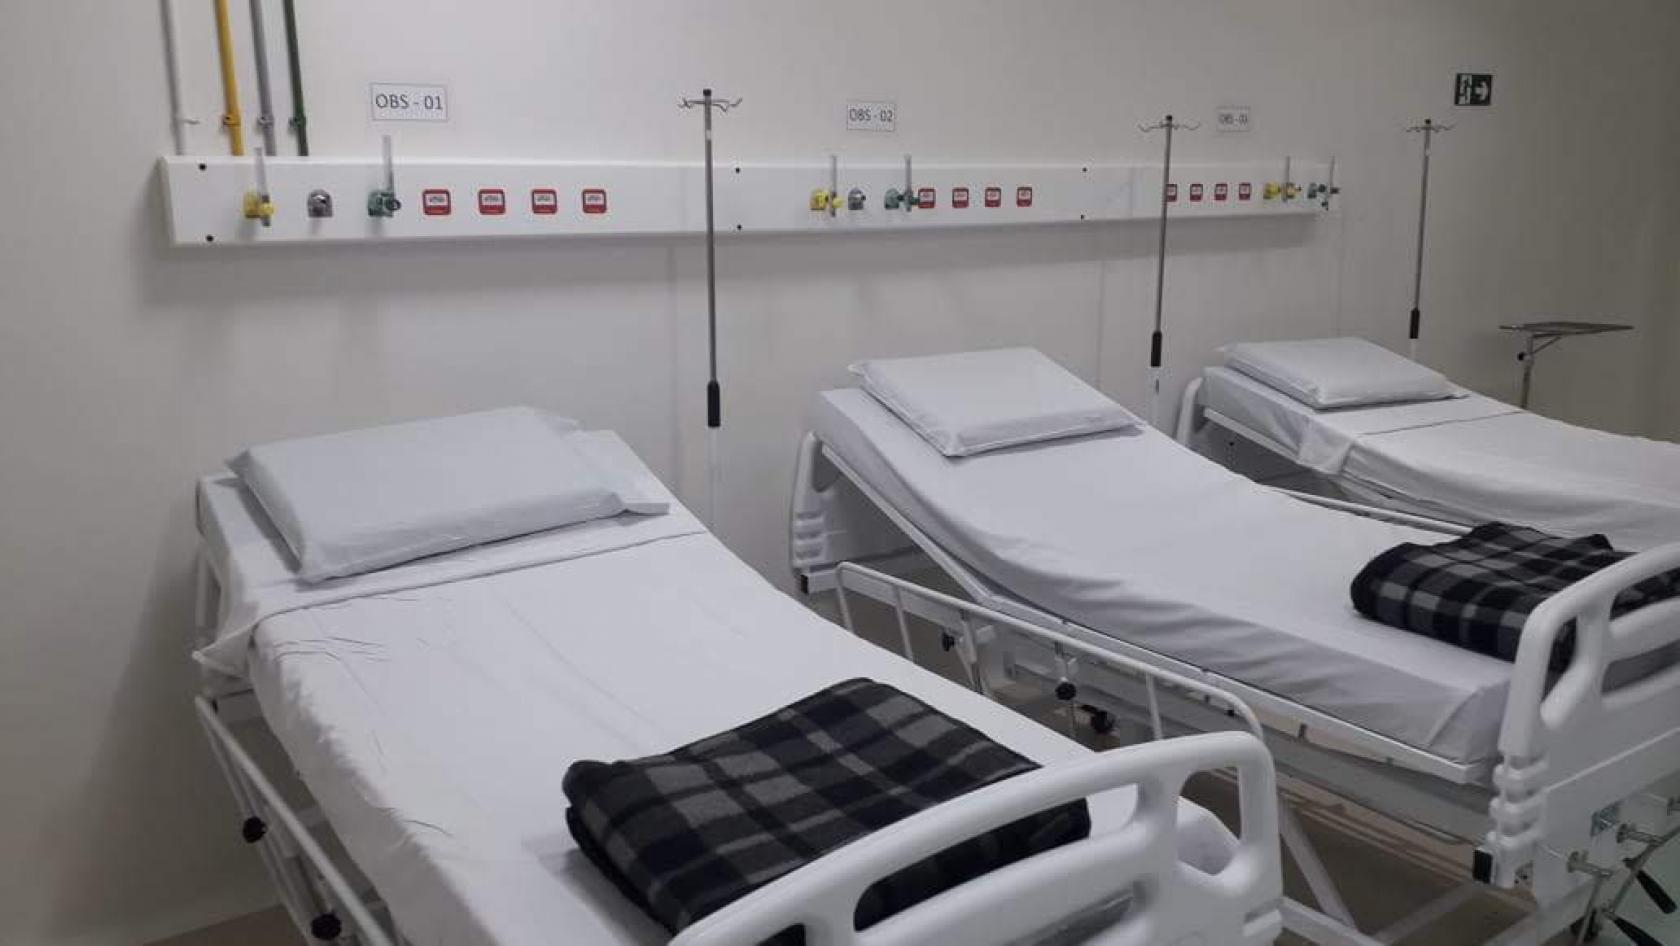 3 camas prontas para receber pacientes #paratodosverem 